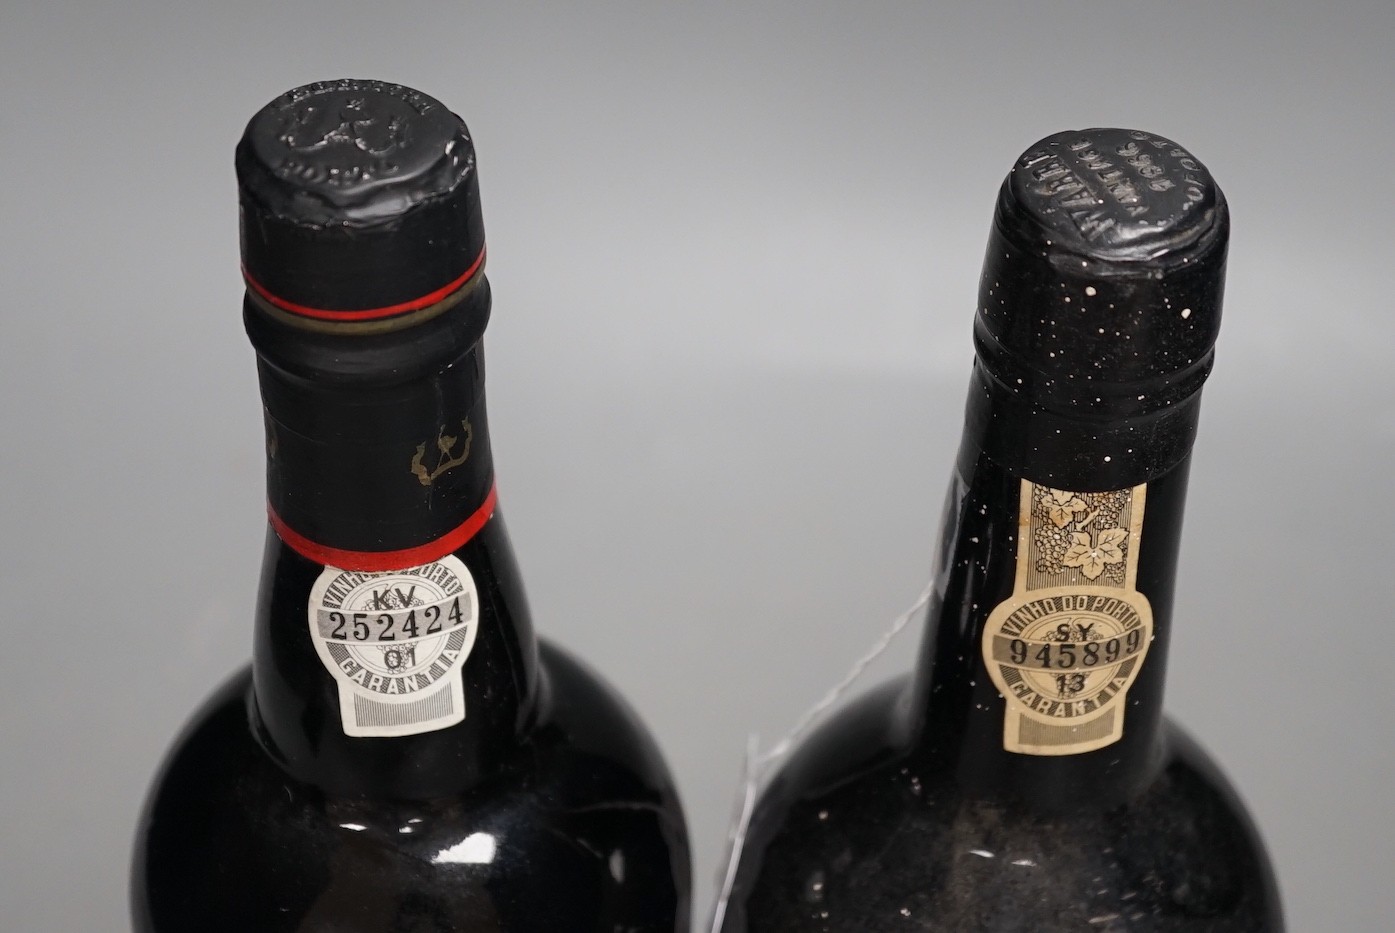 A Warre's 1066 vintage bottle of Port and a bottle of Ferreira LBV Port 1987